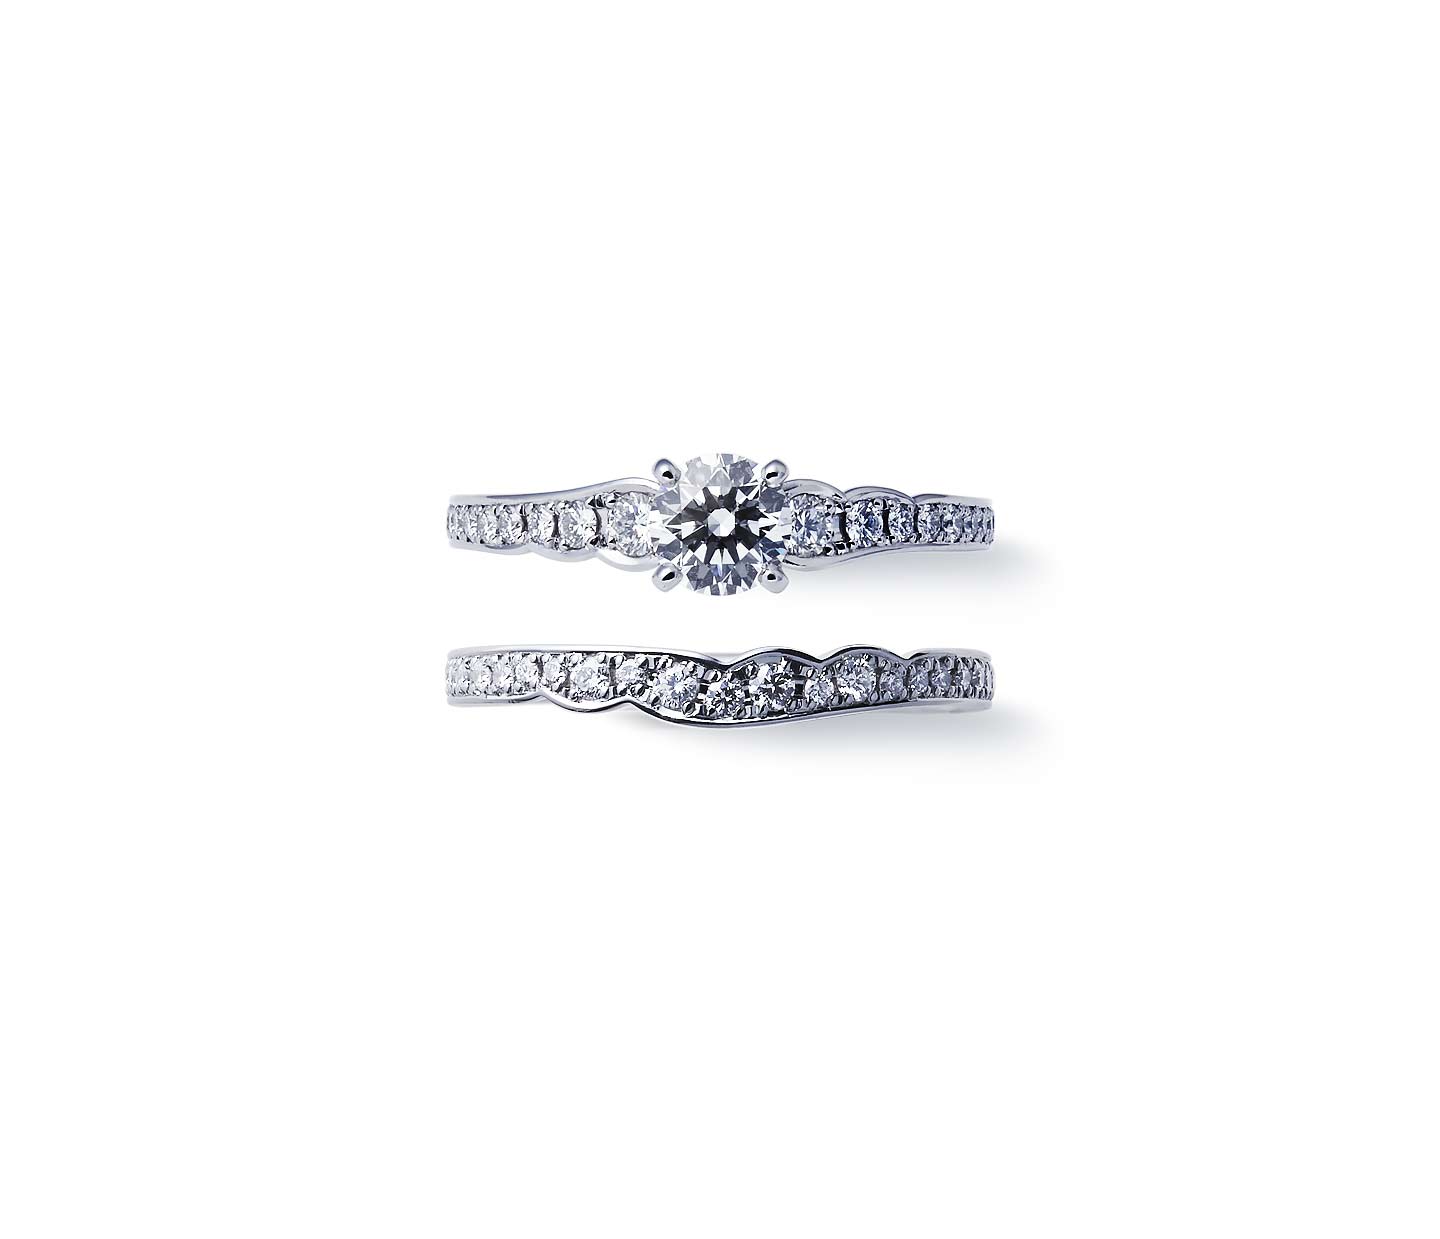 俄(NIWAKA)の花麗の婚約指輪です。 販売クリアランス - core-group.com